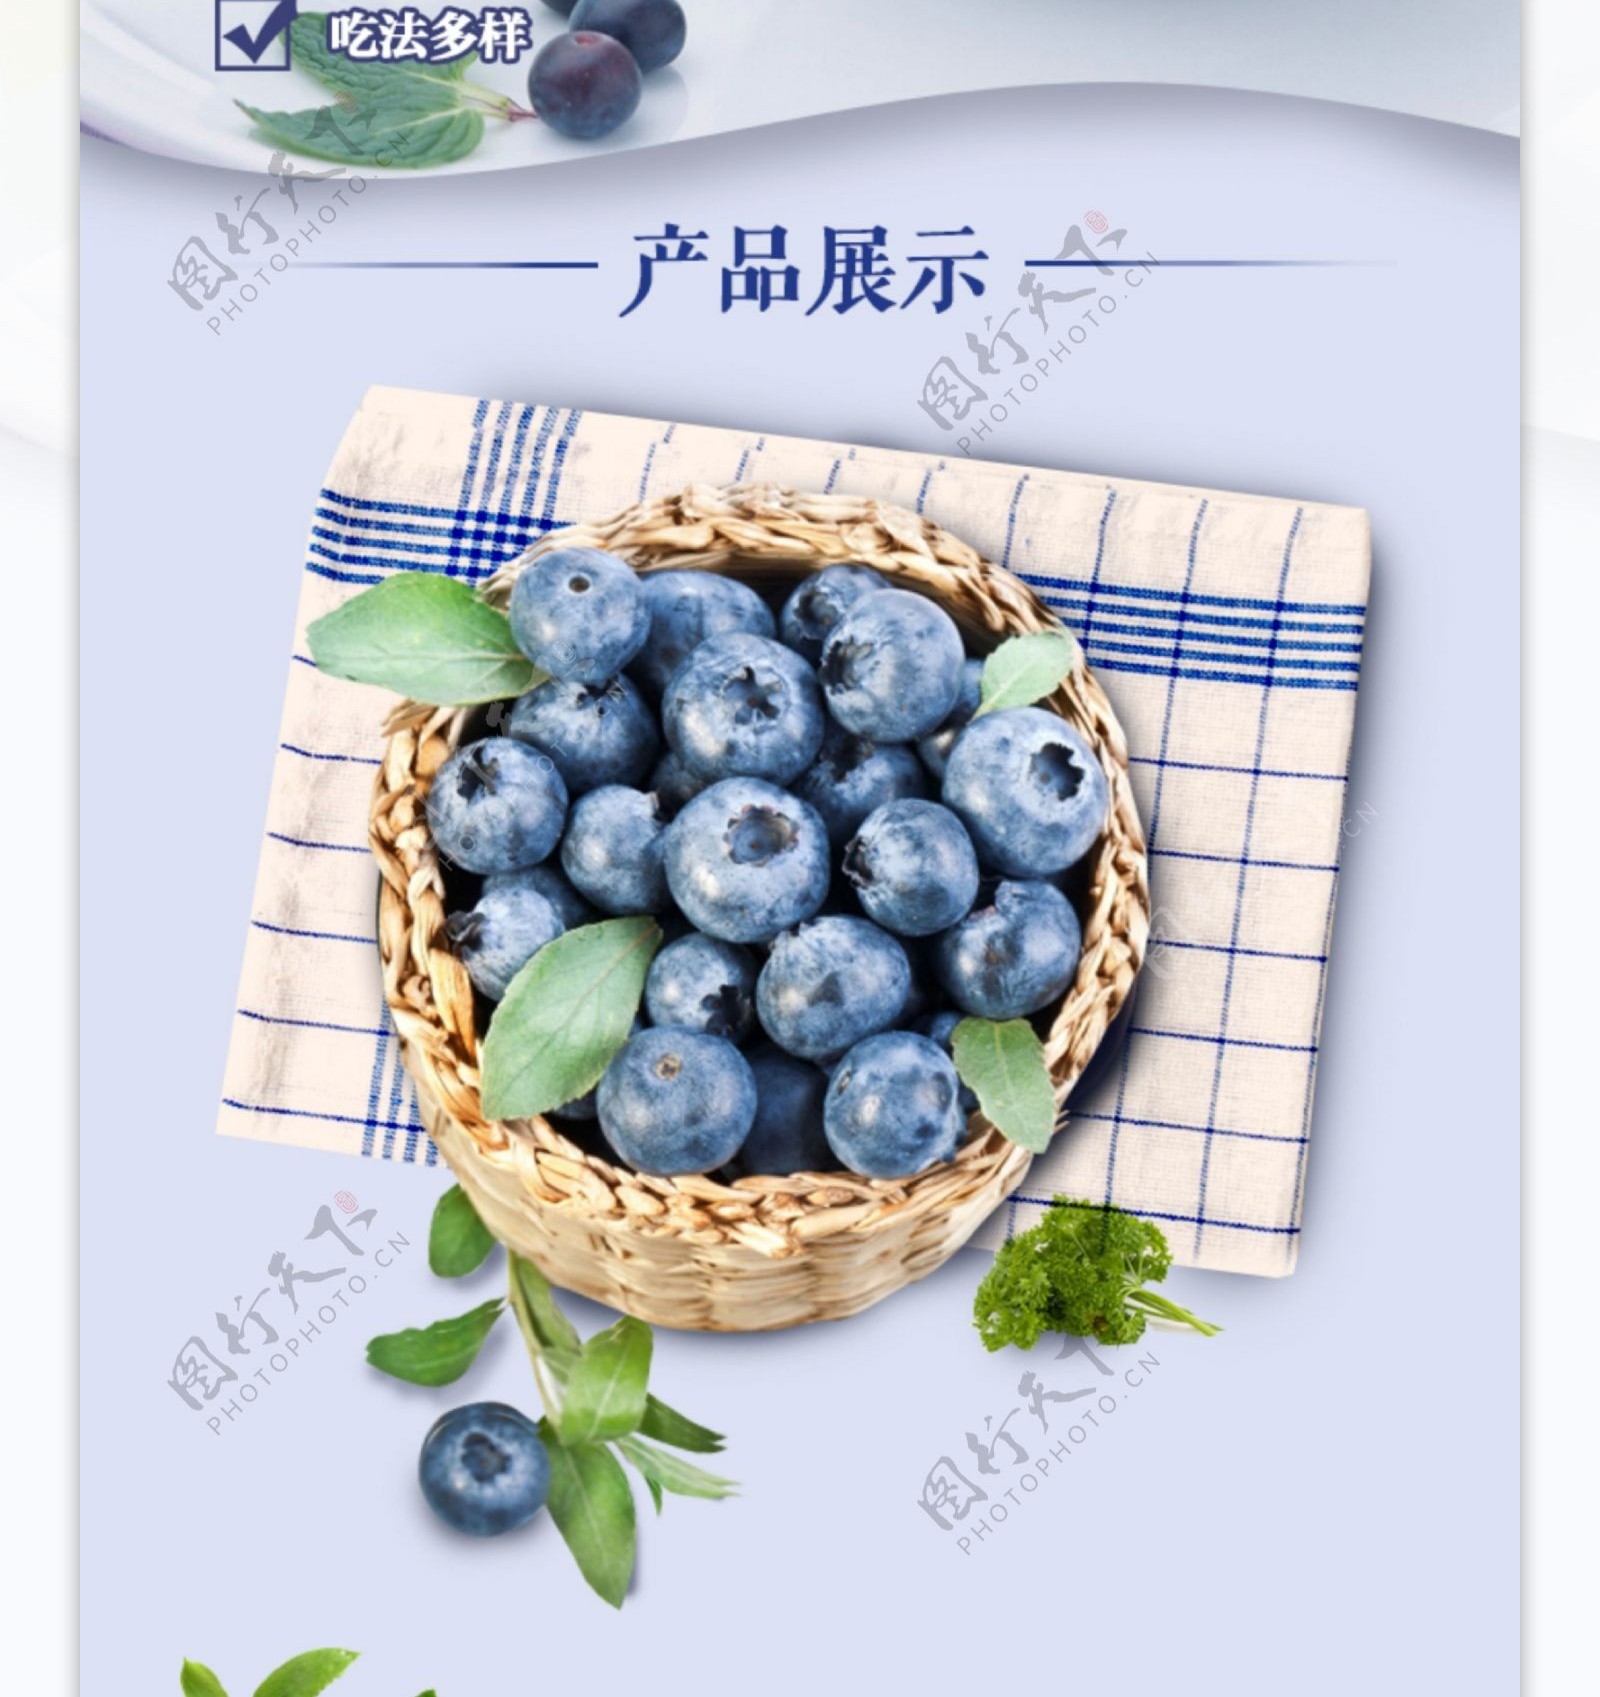 蓝莓详情页